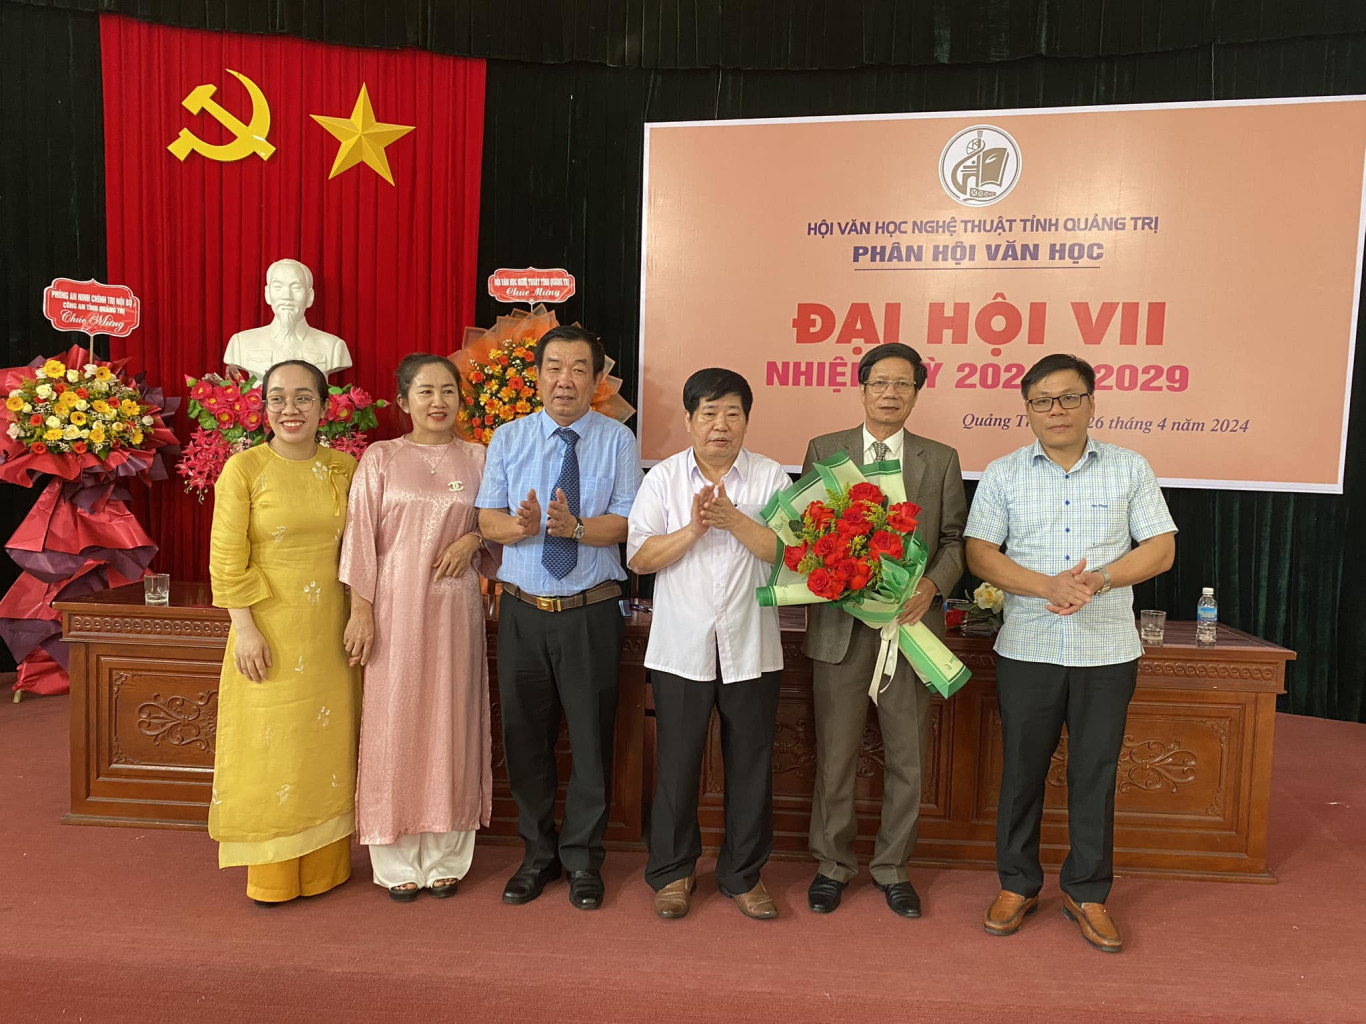 Đại hội Phân hội Văn học tỉnh Quảng Trị, nhiệm kỳ 2024-2029